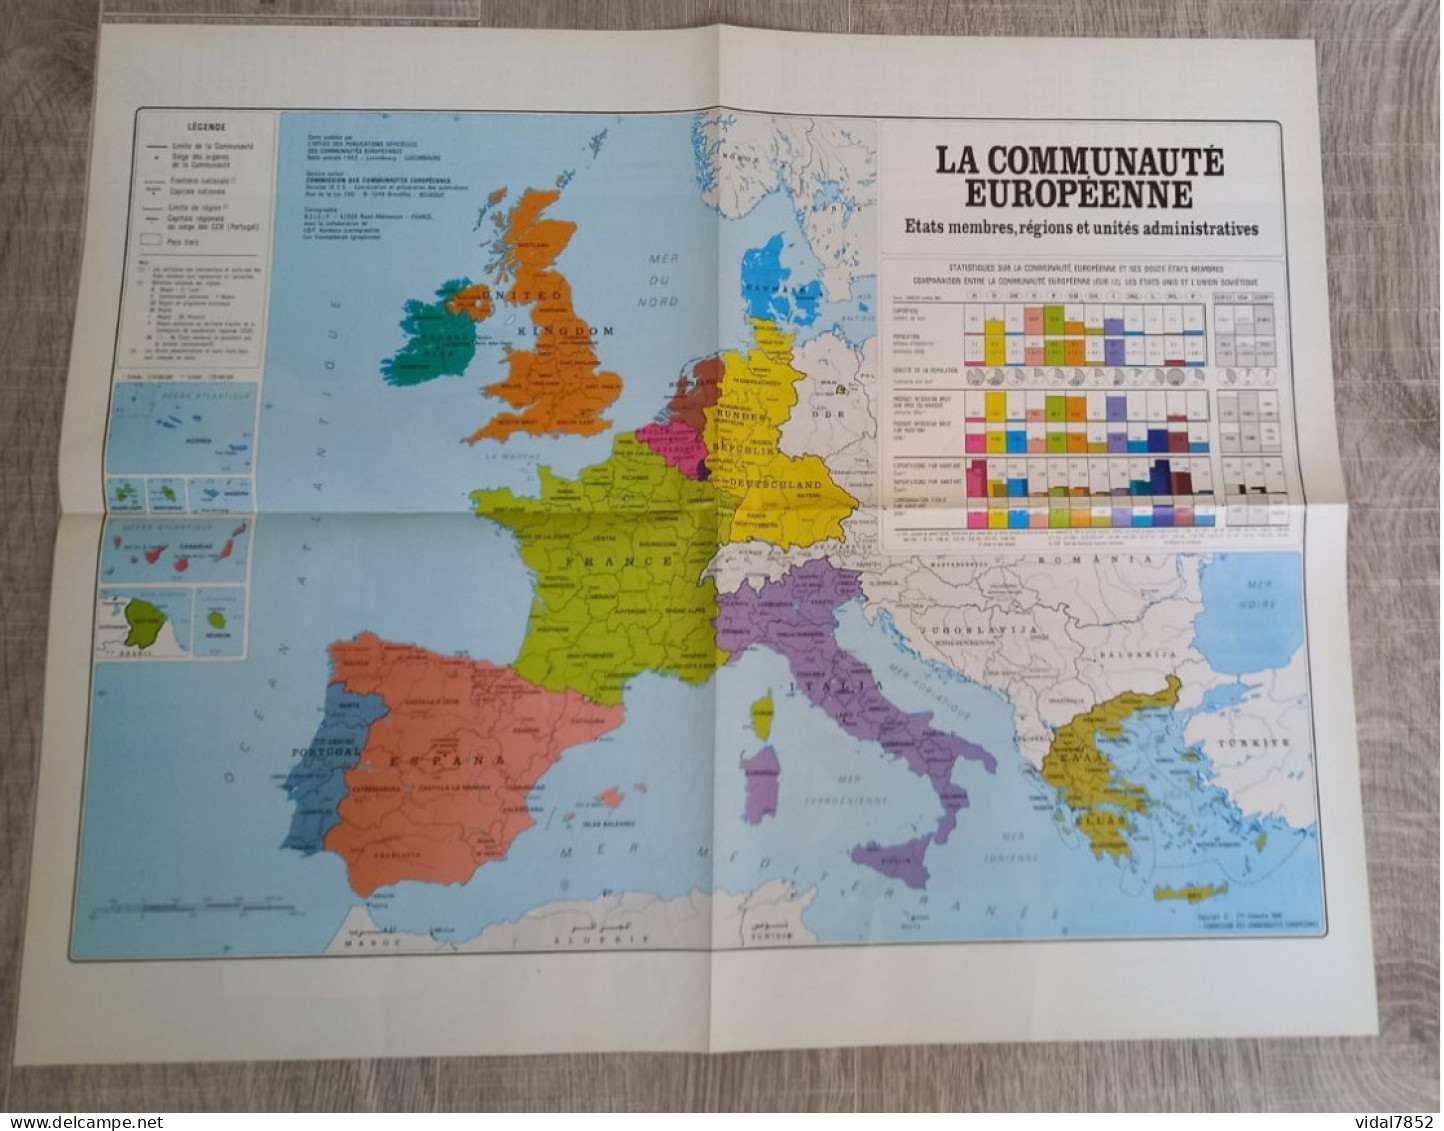 Calendrier-Almanach Des P.T.T 1991-Poster Intérieur Communauté Européenne--Tom Jerry Département AIN-01-Référence 325 - Grossformat : 1991-00